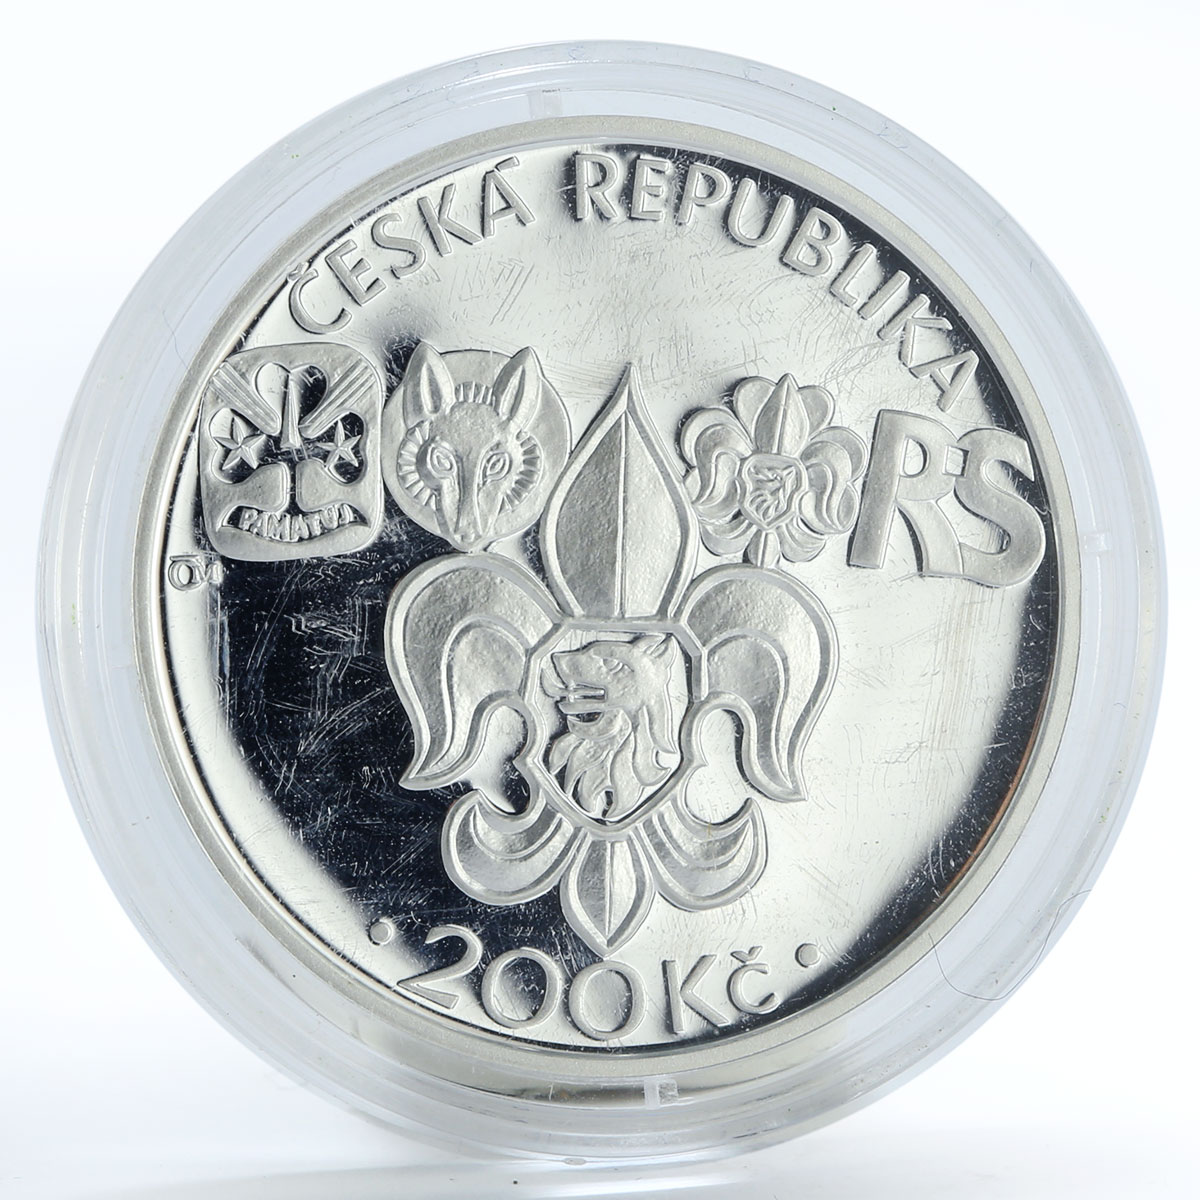 Czech Republic 200 korun 100 Anniversary of Foundation of Junak silver coin 2012